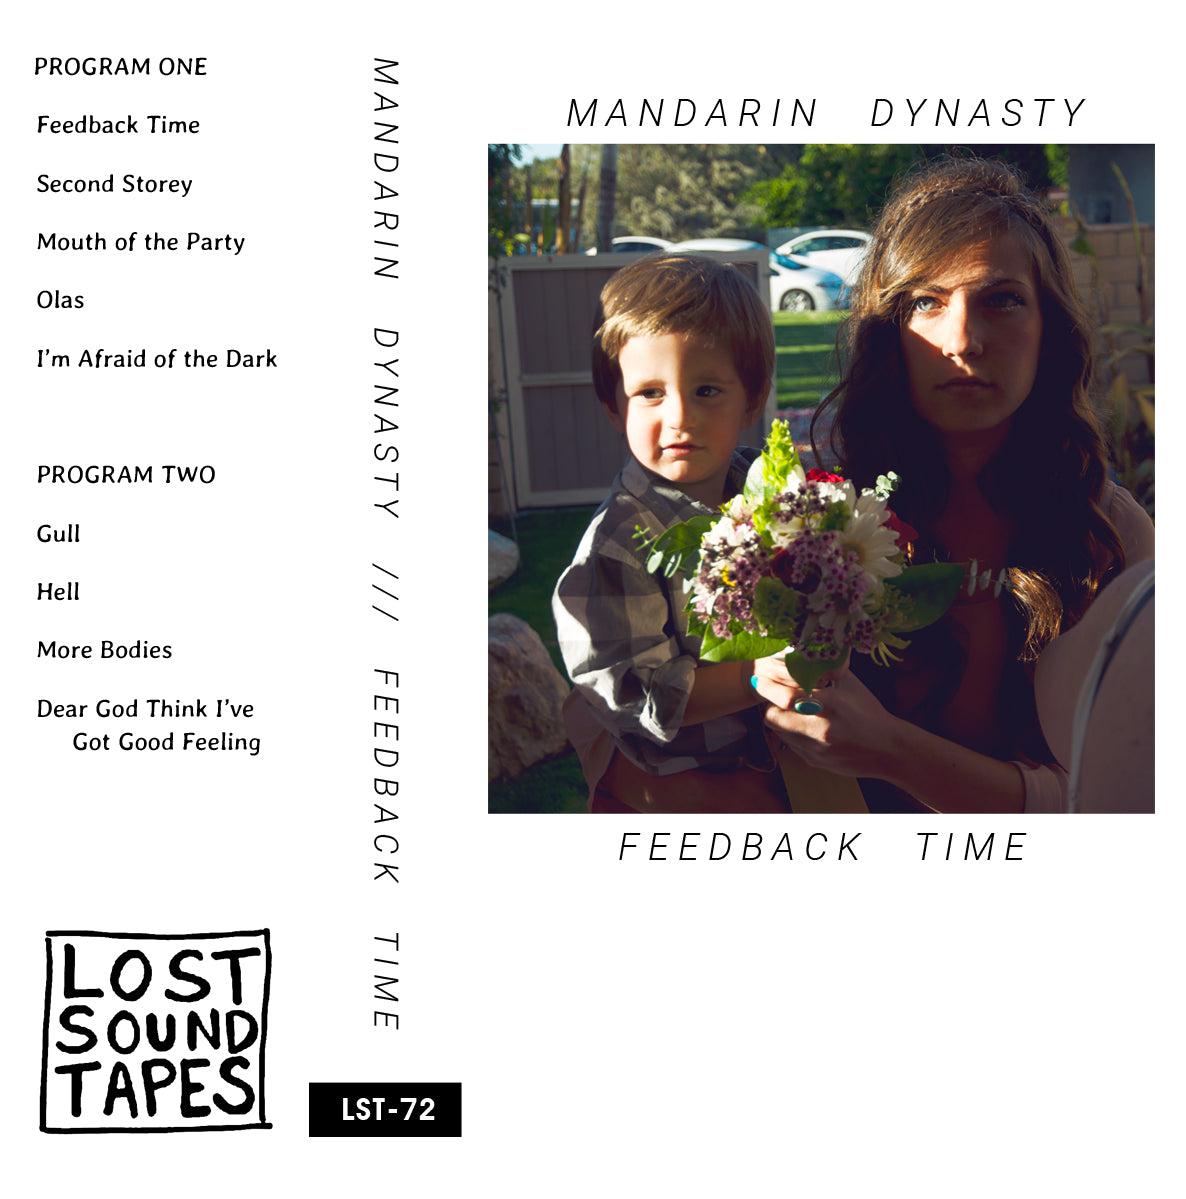 MANDARIN DYNASTY "Feedback Time" cassette tape